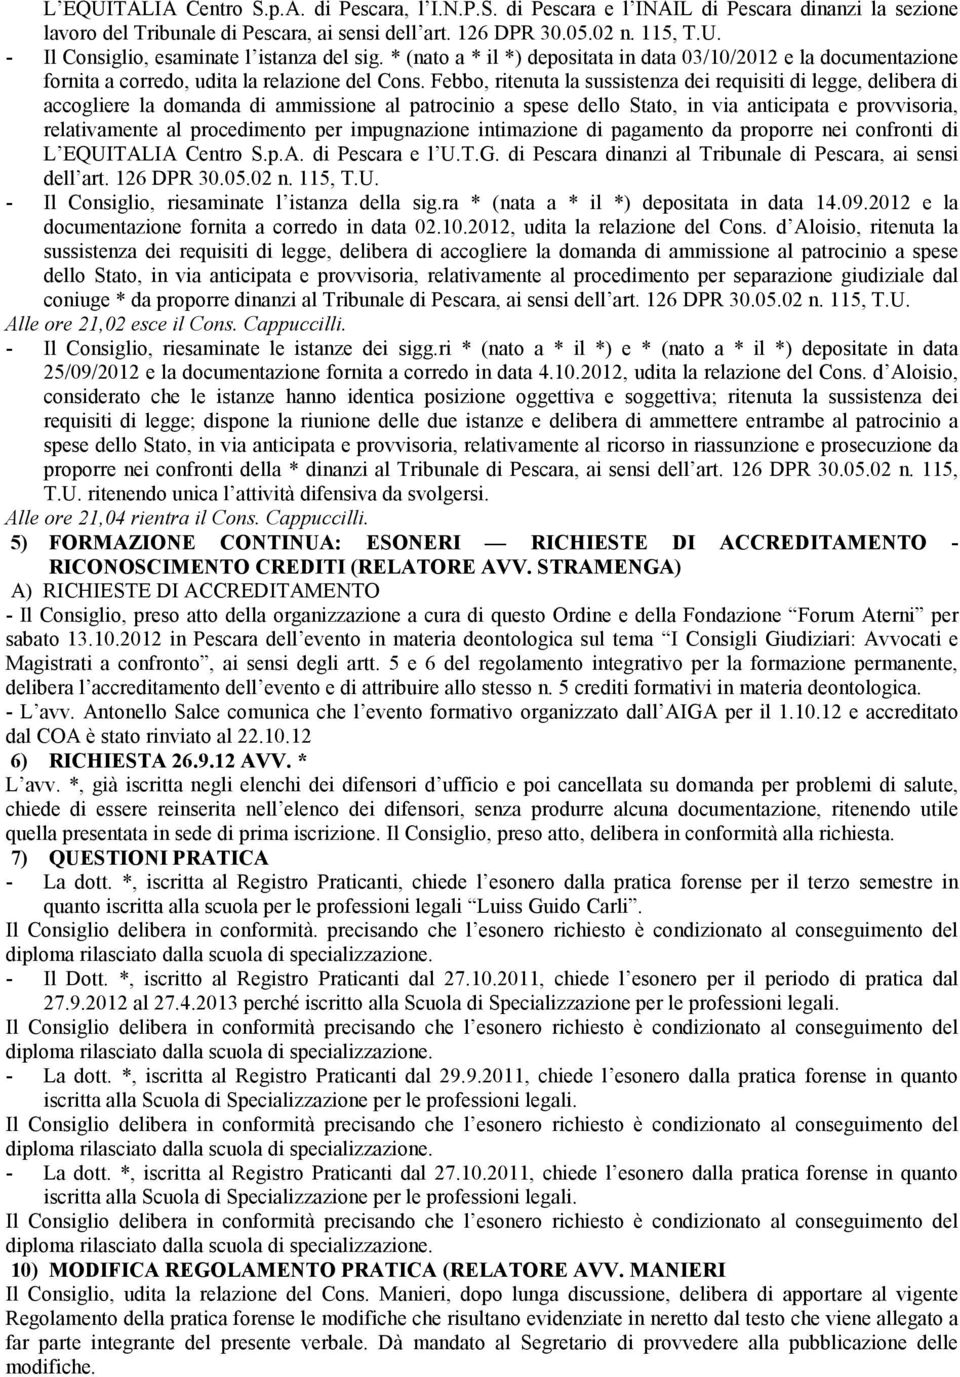 T.G. di Pescara dinanzi al Tribunale di Pescara, ai sensi dell art. 126 DPR 30.05.02 n. 115, T.U. - Il Consiglio, riesaminate l istanza della sig.ra * (nata a * il *) depositata in data 14.09.